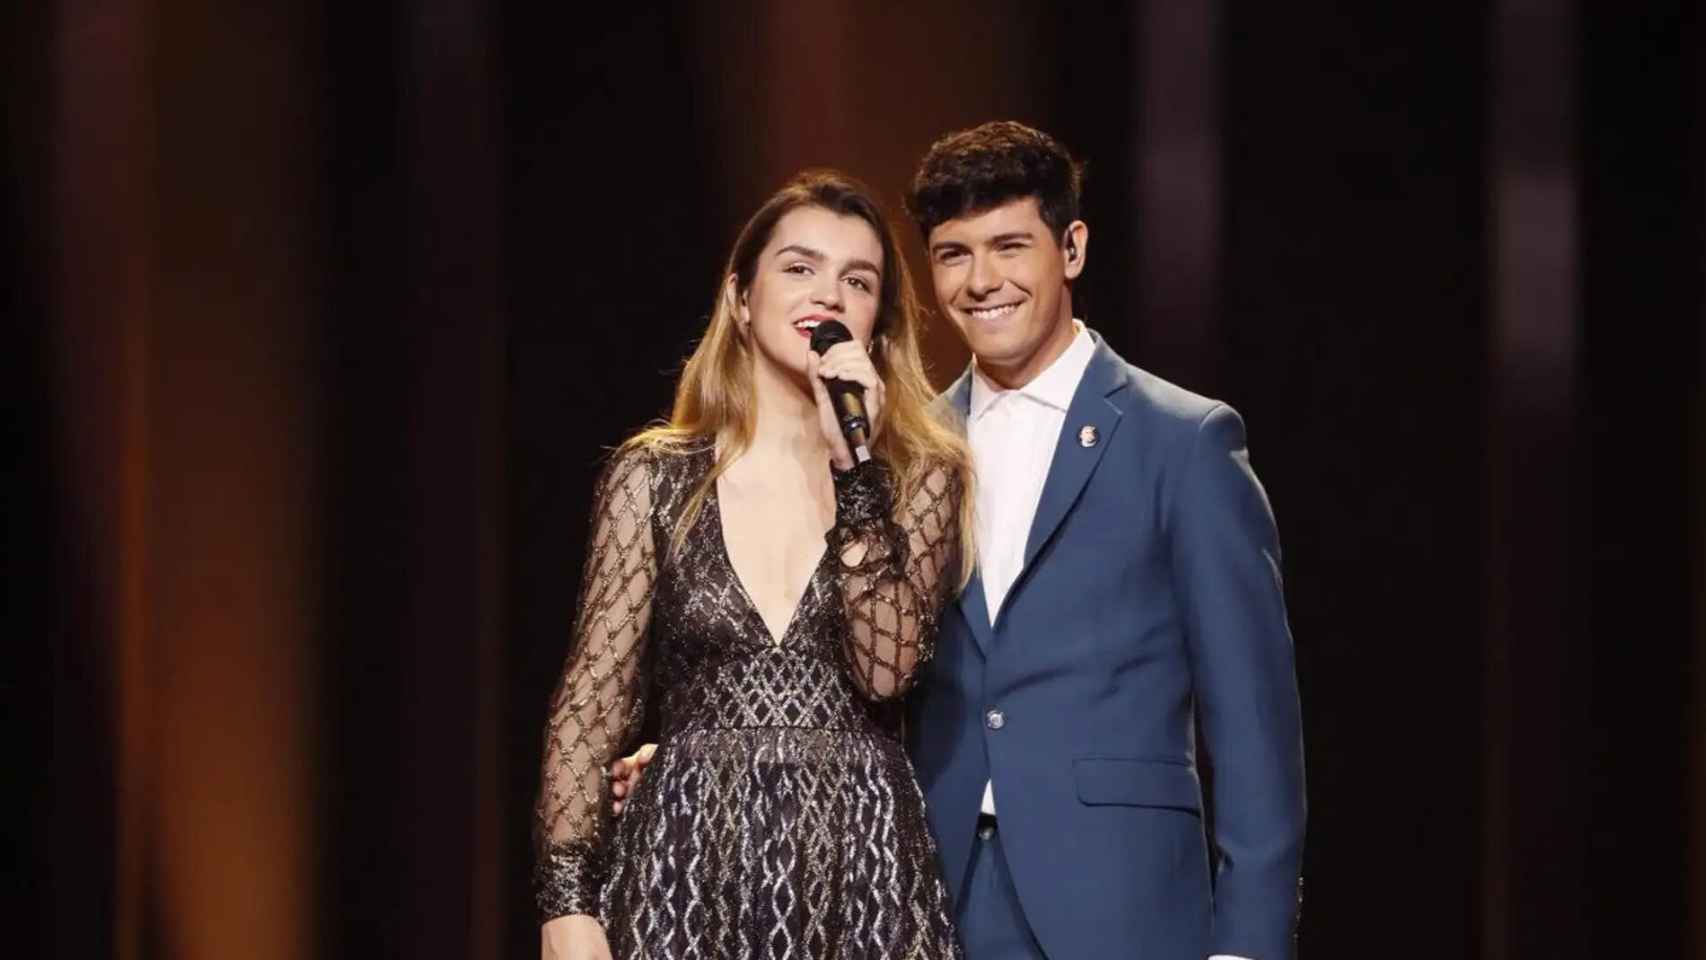 Alfred ya representó a España en Eurovisión 2018 con Amaia Romero.